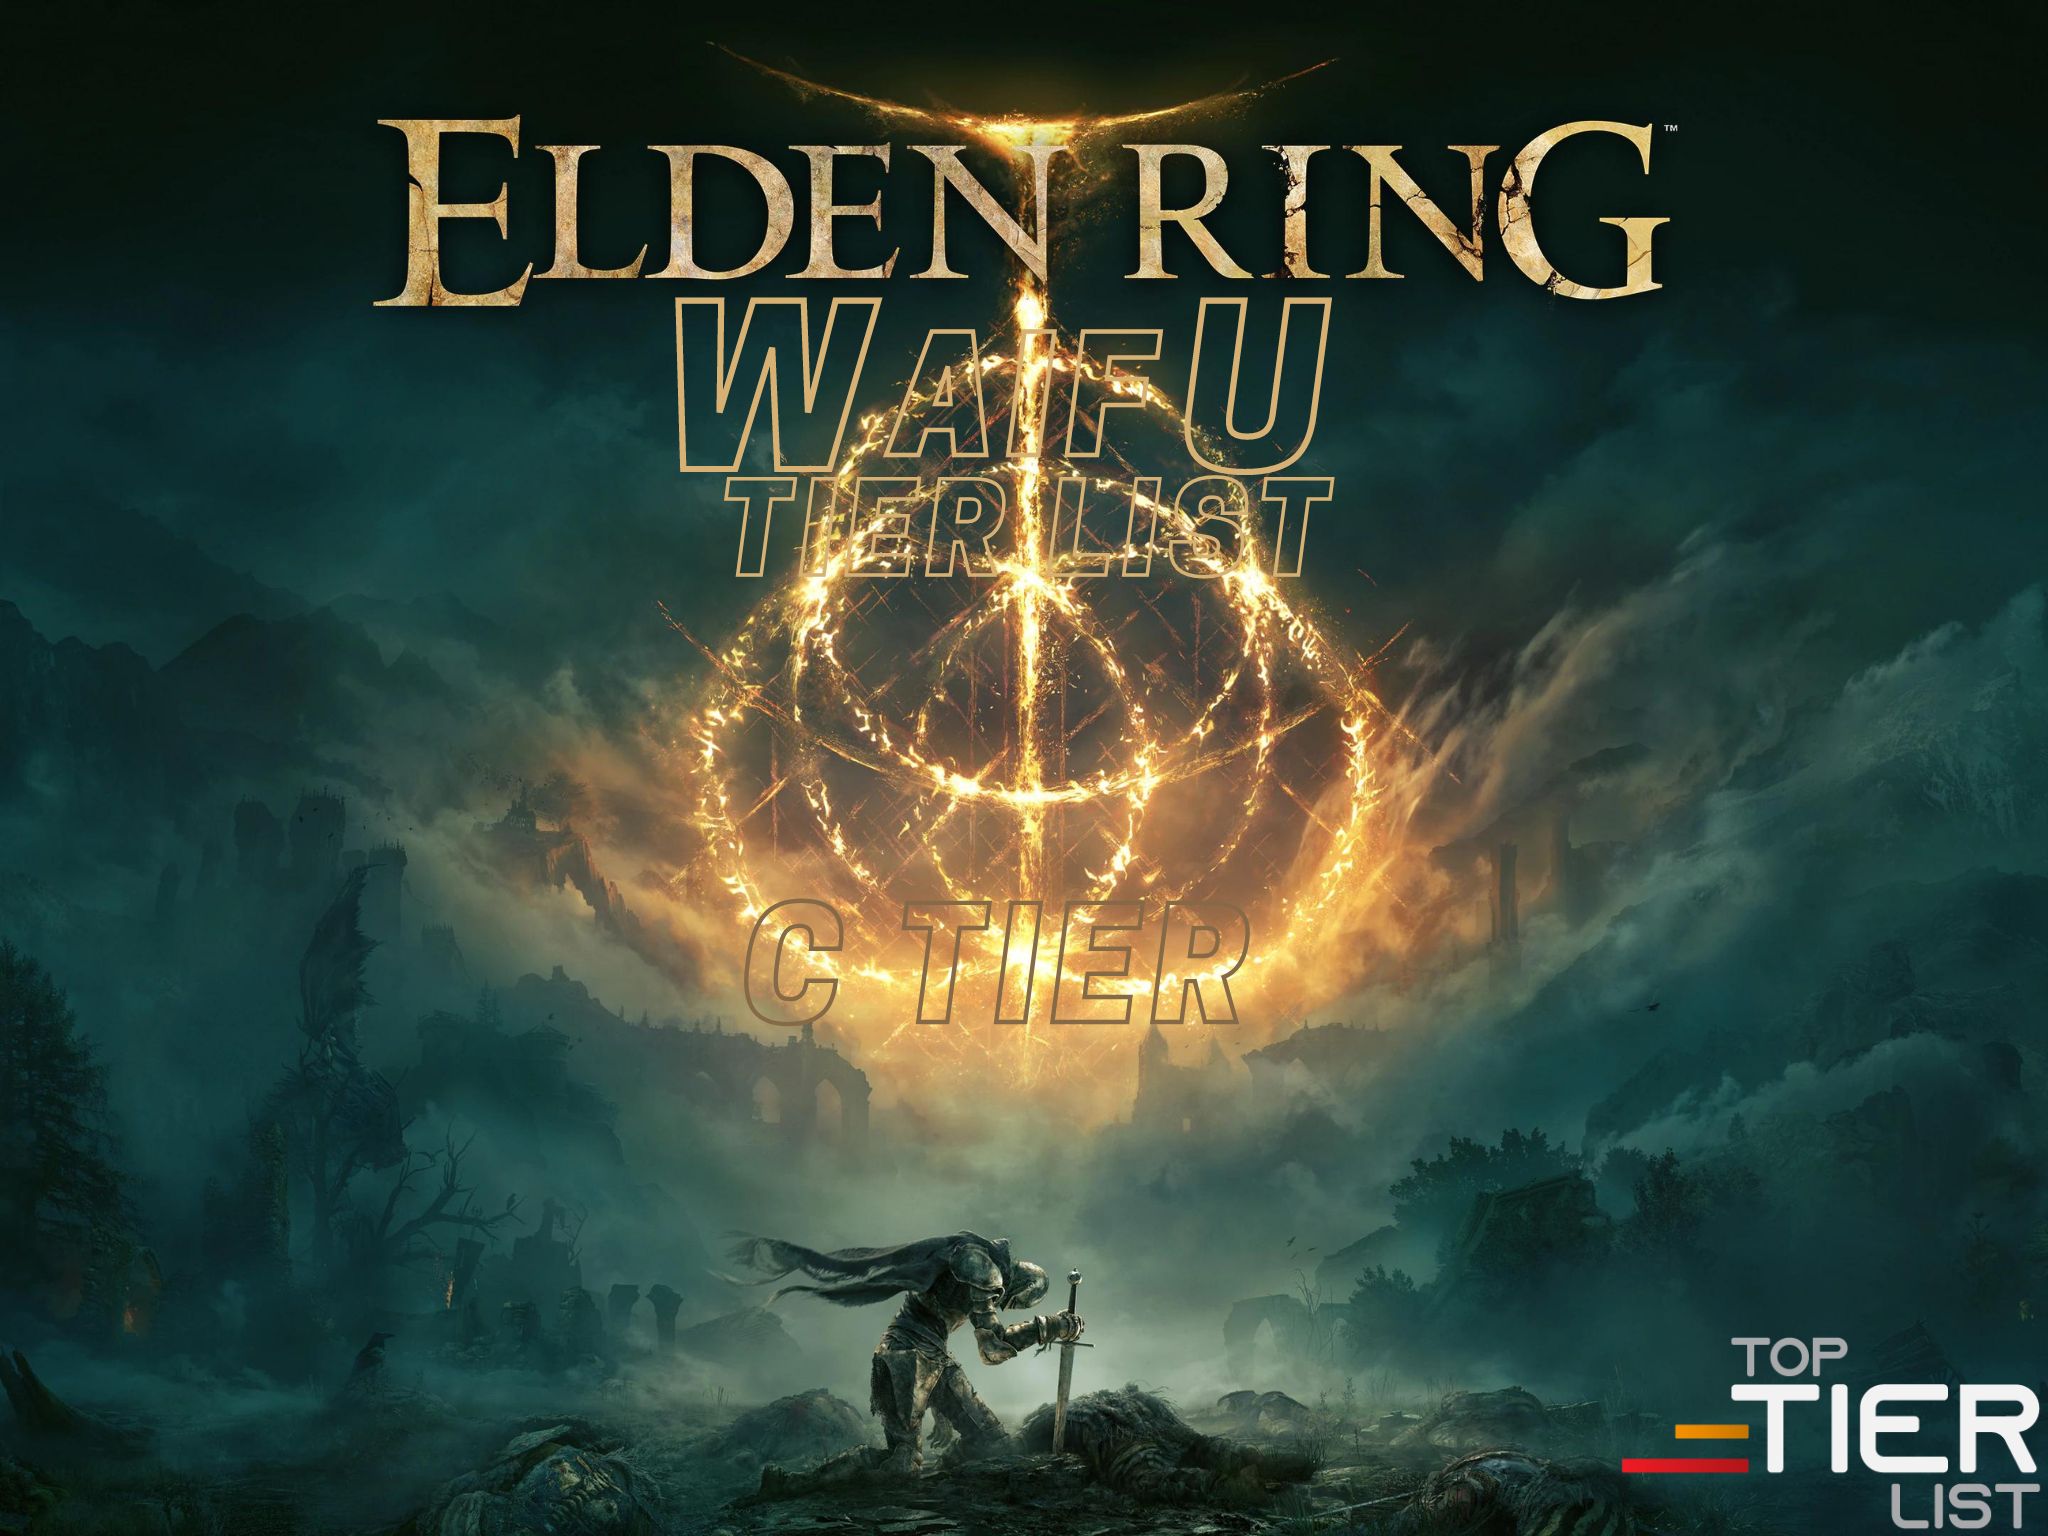 Elden Ring waifu tier list C tier